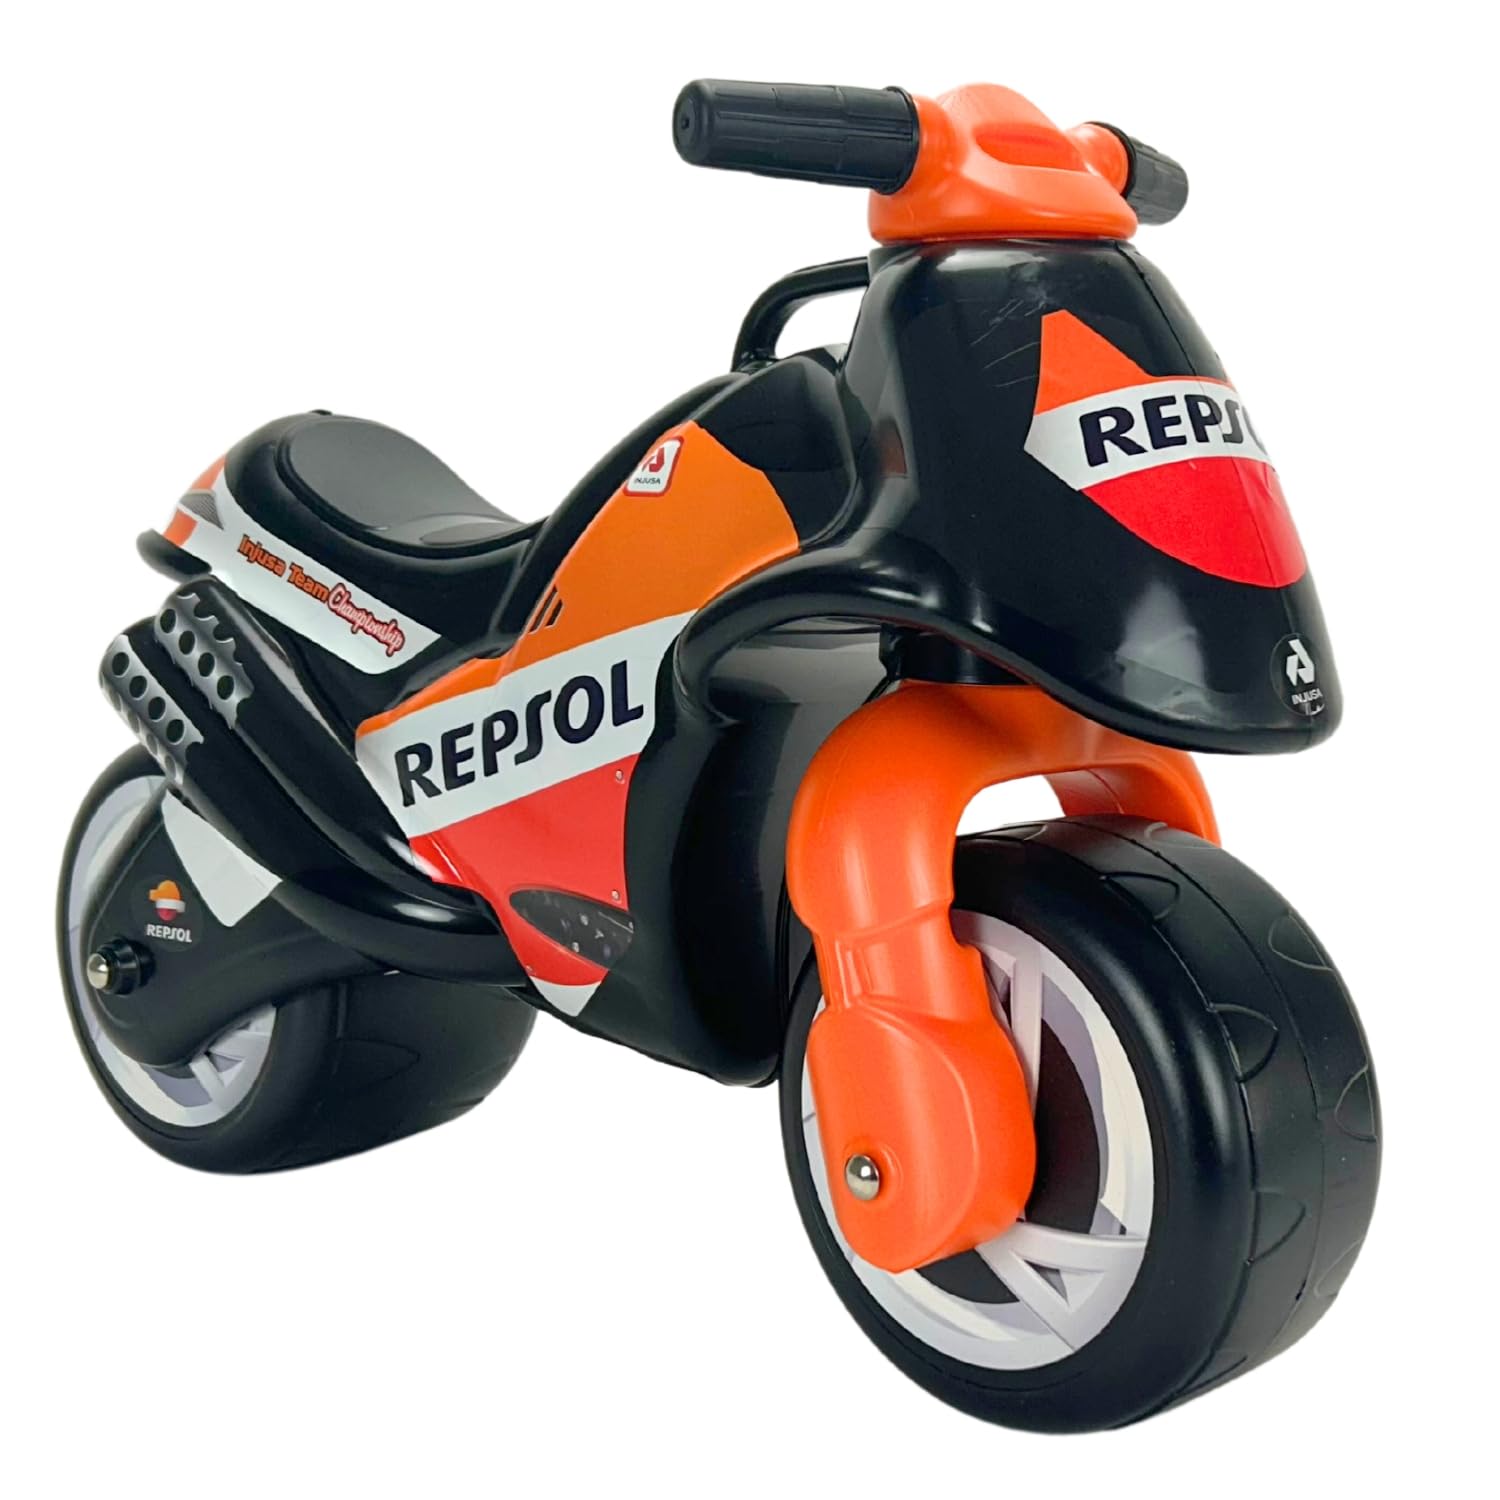 INJUSA - Moto Laufrad Neox Repsol, Ride-On für Kinder von 18 Monaten bis 3 Jahren, mit breite Kunststoffräder, Tragegriff für die Eltern, dauerhafte und wasserfeste Dekoration, Farbe Schwarz